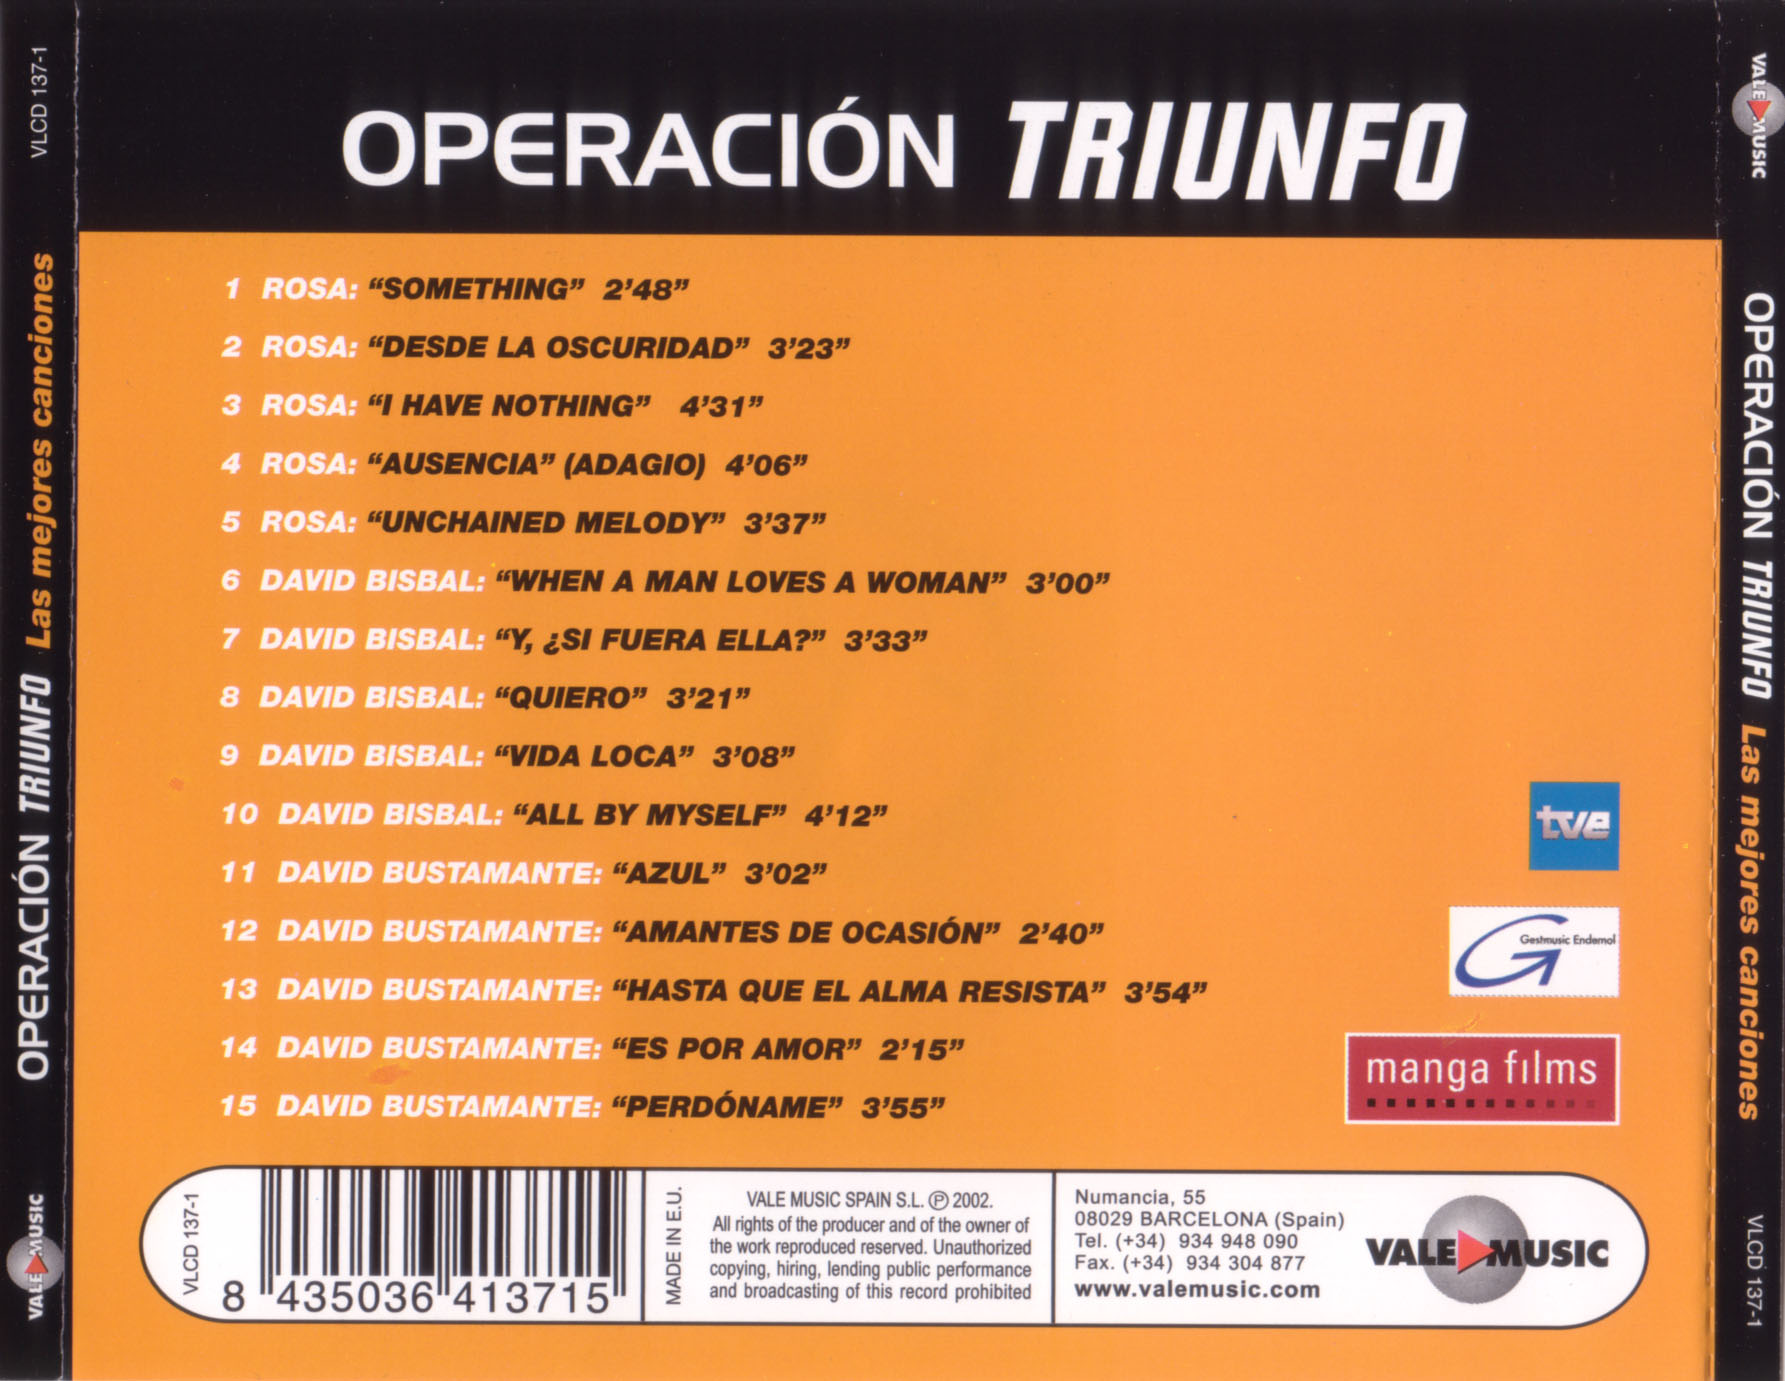 Cartula Trasera de Operacion Triunfo 2001-2002 Las Mejores Canciones